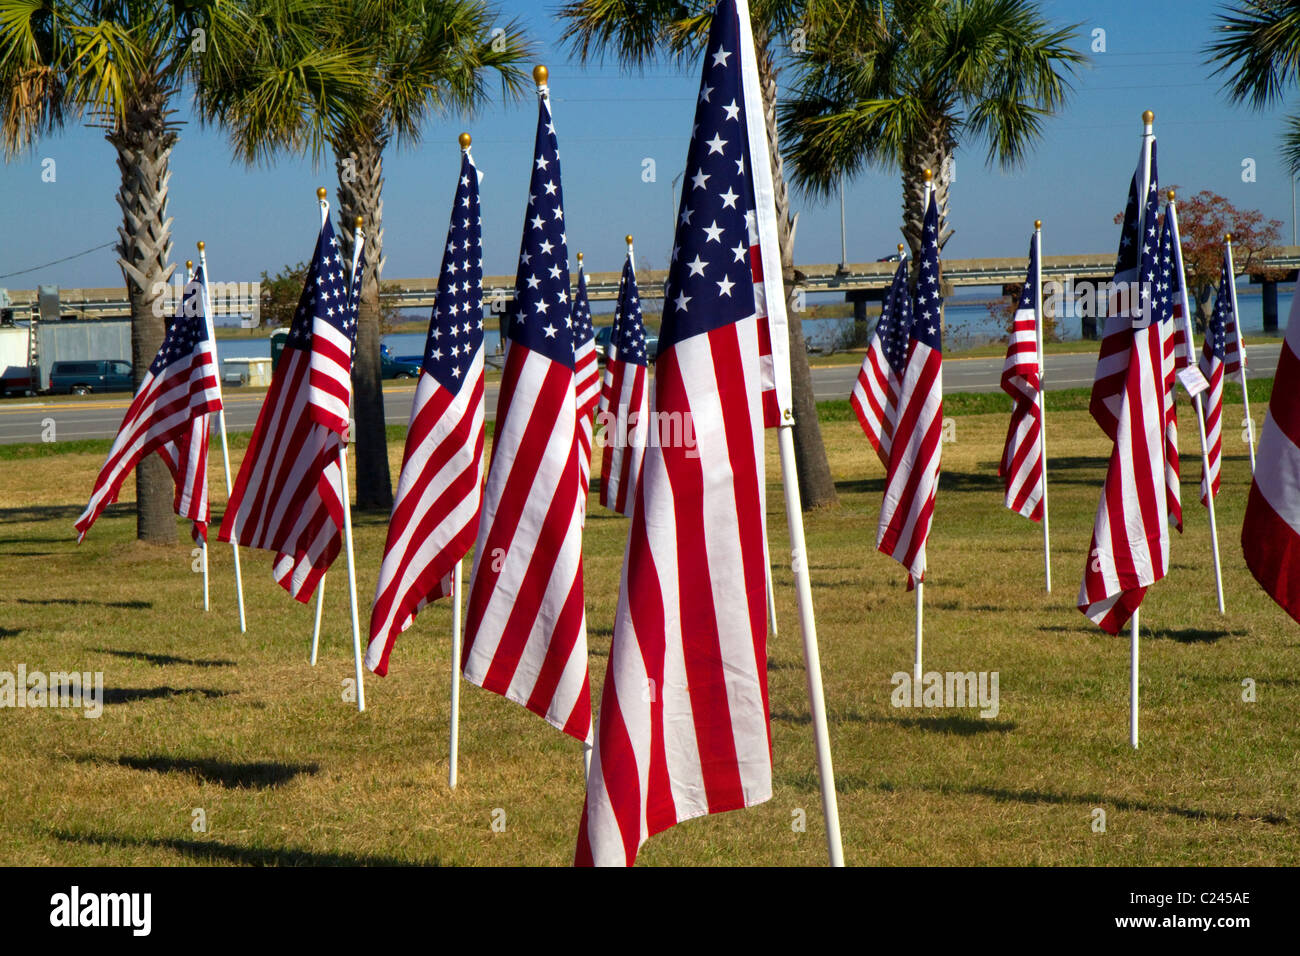 USA-Flaggen auf dem Display zu Ehren der Veteranen Dat im Battleship Memorial Park, Mobile, Alabama, USA. Stockfoto